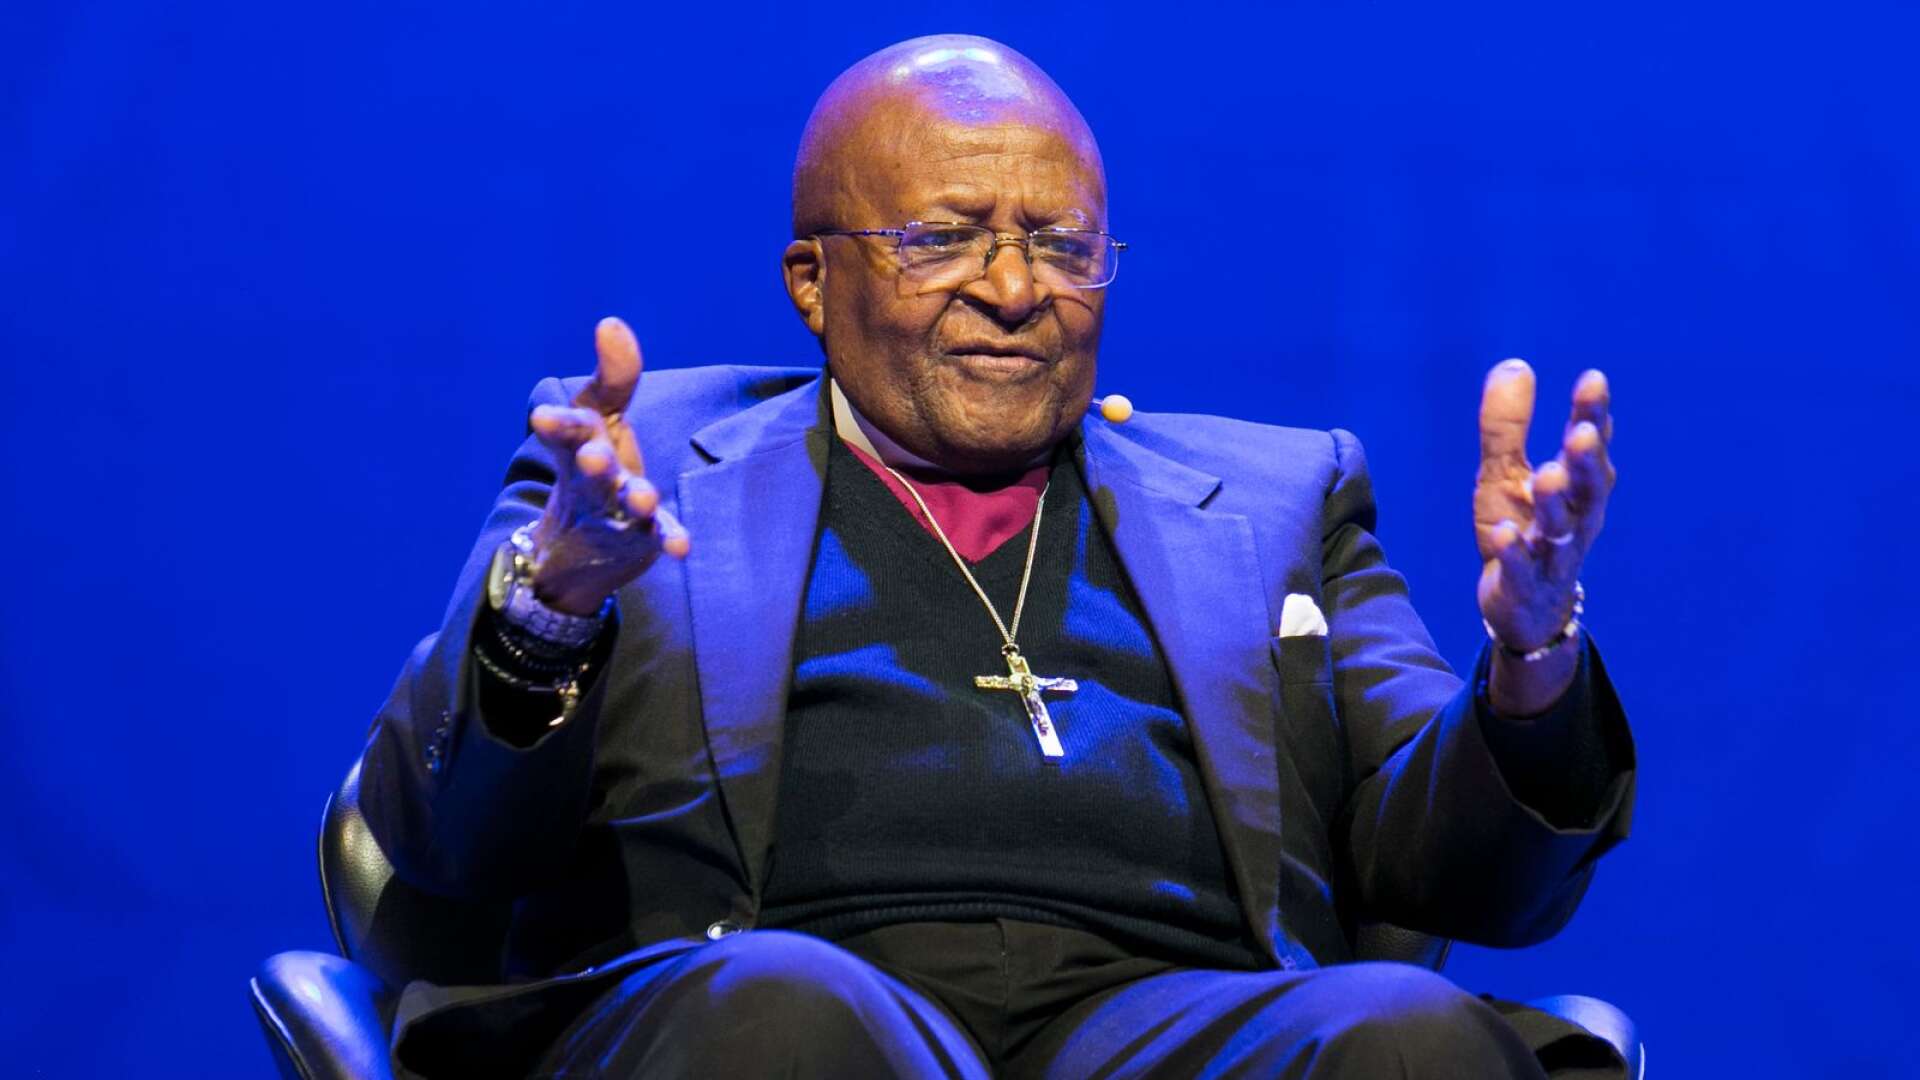 När Desmond Tutu förde kampen mot apartheidregimen i Sydafrika var det samma inre vrede som låg bakom, skriver Sven Kragh.